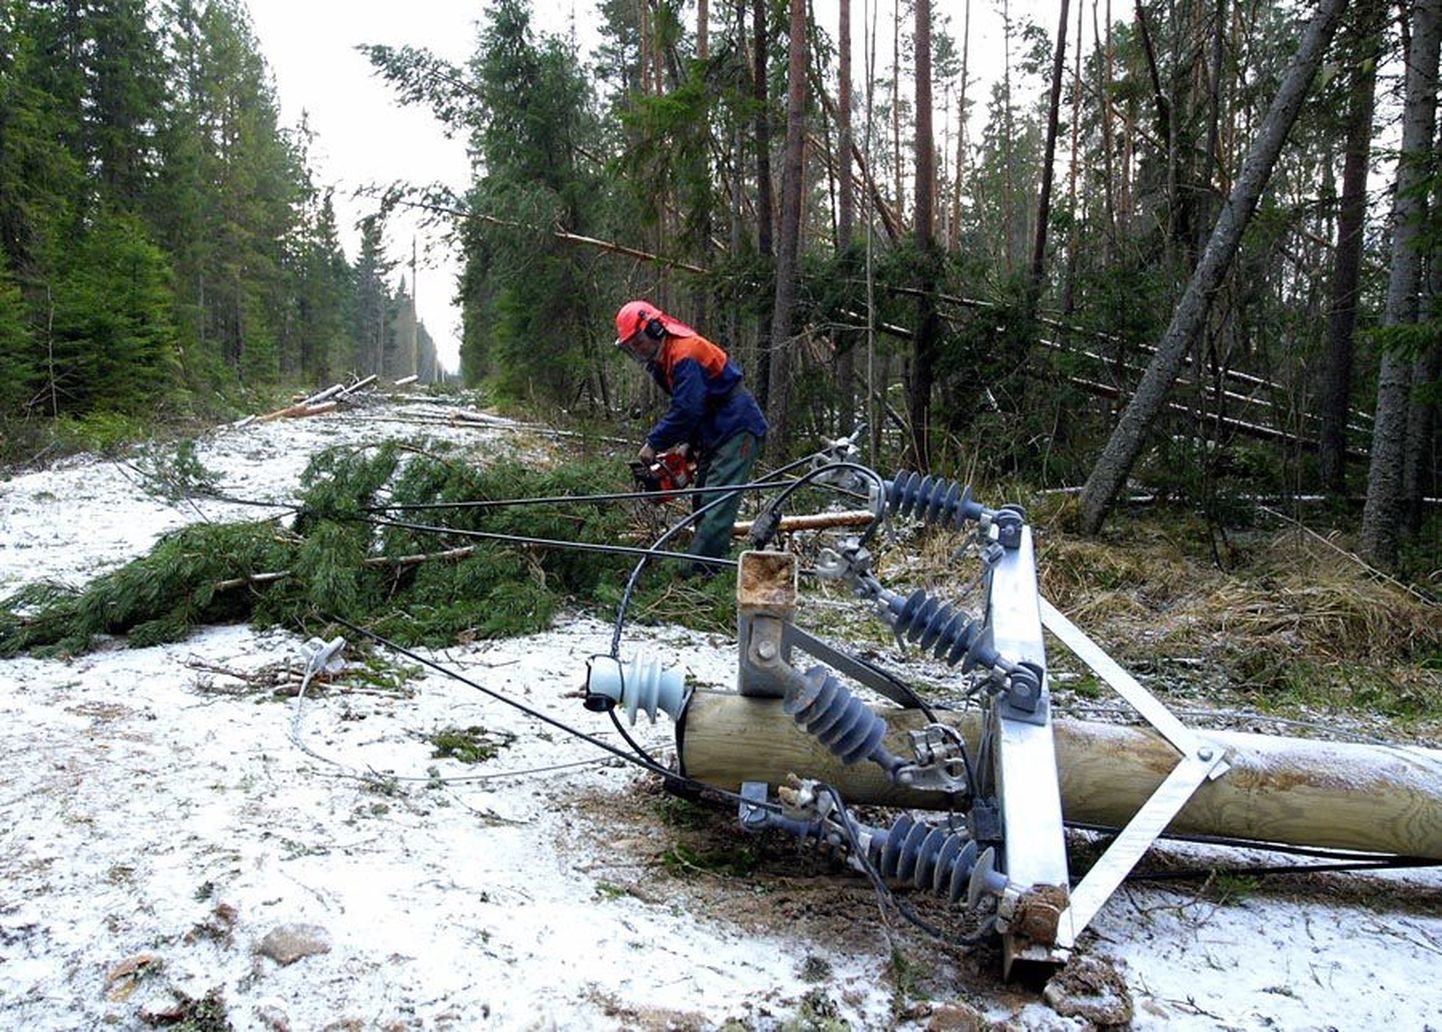 Et Viljandimaa on Eesti üks metsarikkamaid piirkondi, on siinne elektrivõrk ka haavatavam liinidele kukkuvatest puudest.